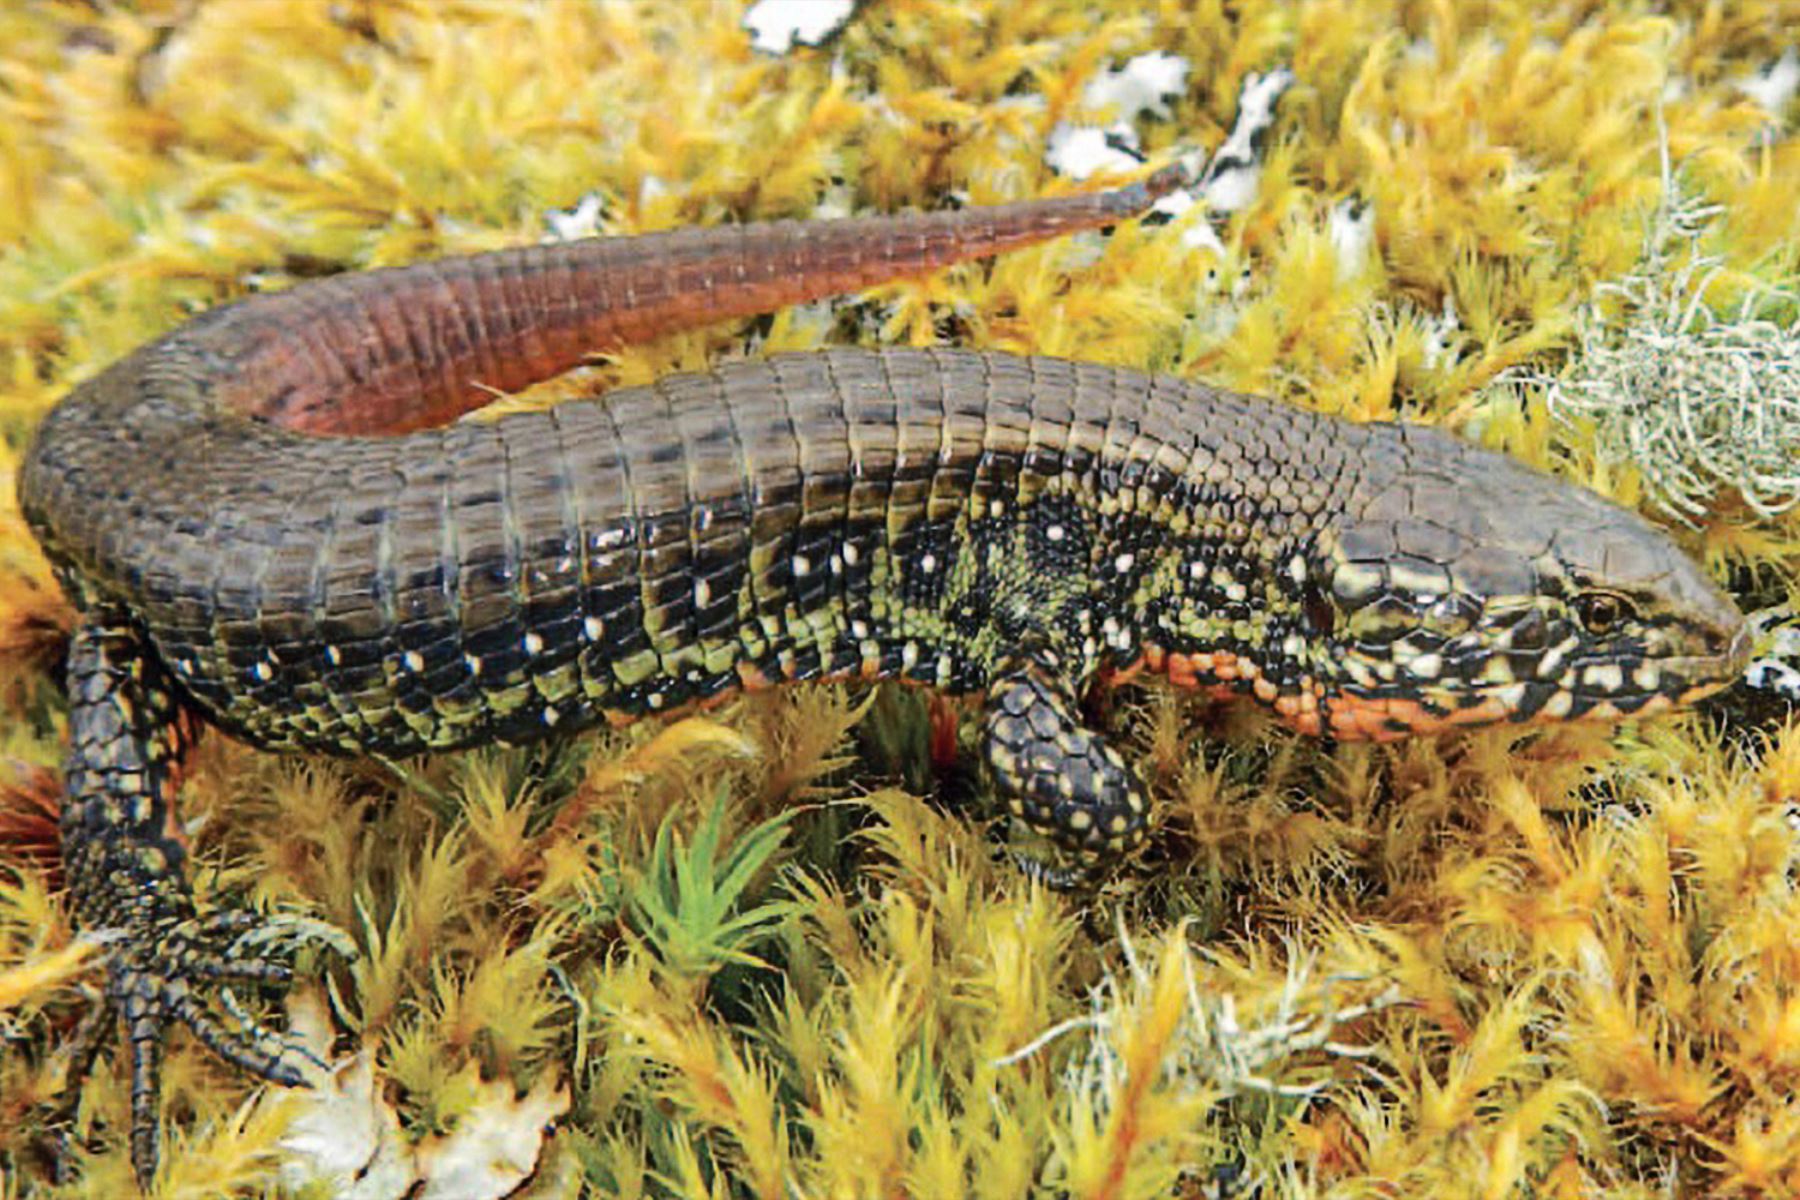 Investigadores del MHN de San Marcos descubren nuevo género de lagarto terrestre. Foto: San Marcos